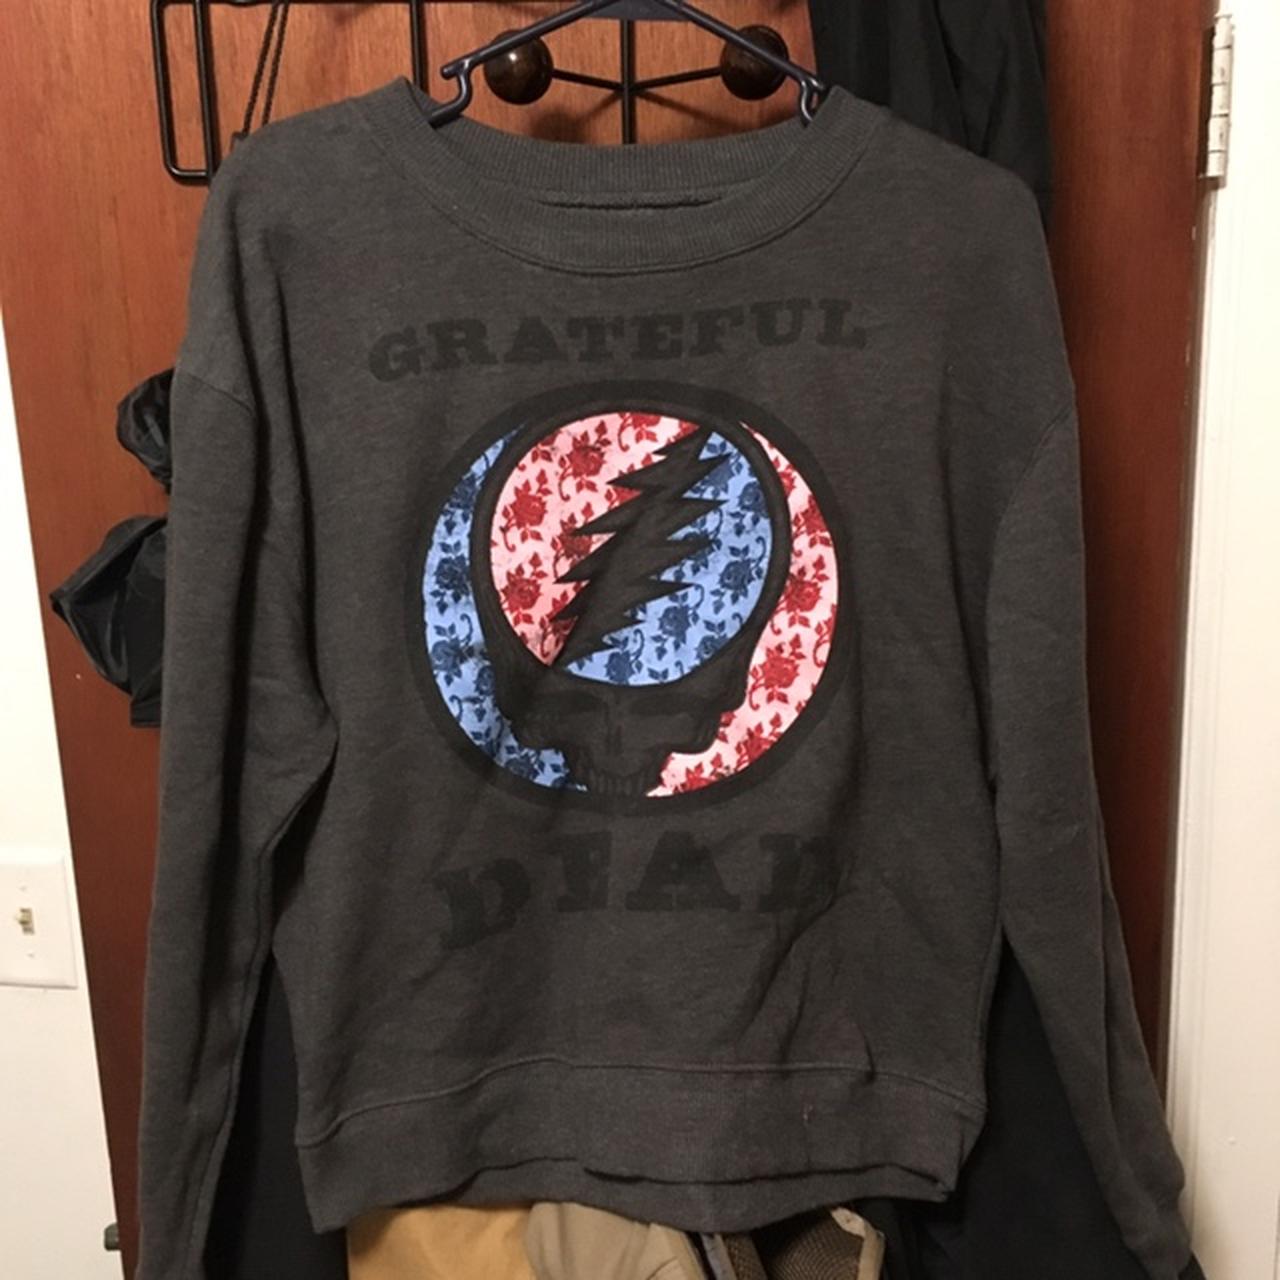 Official Grateful Dead sweatshirt - Depop